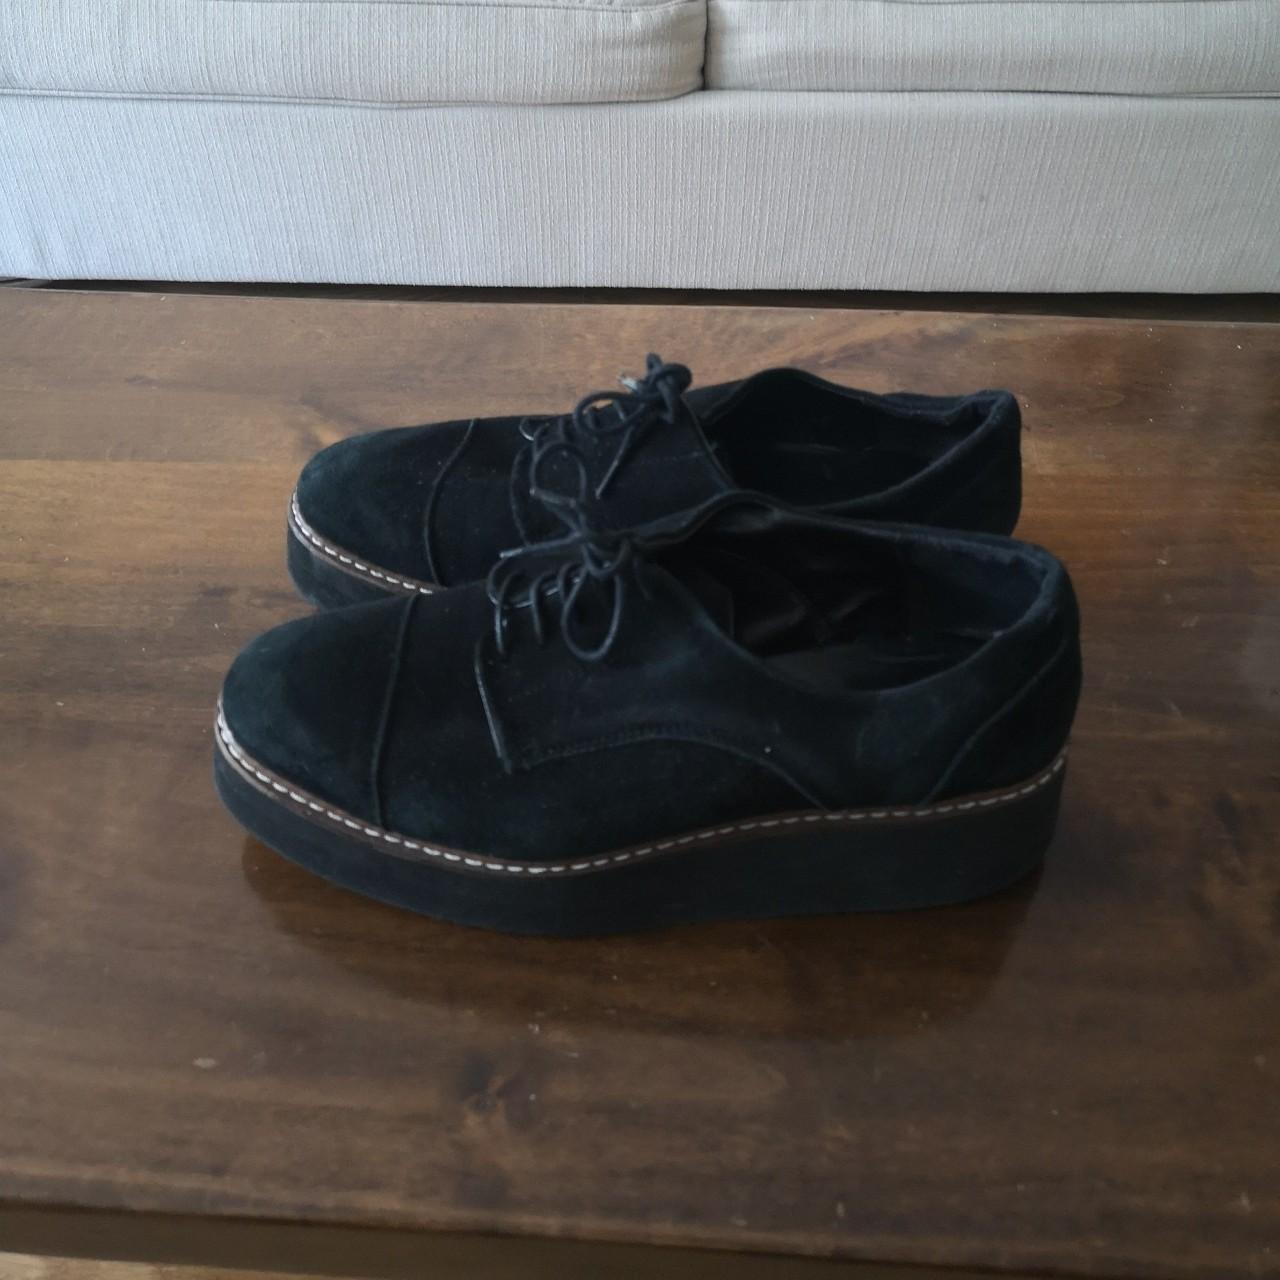 Black suede carvela platform loafers. Good... - Depop